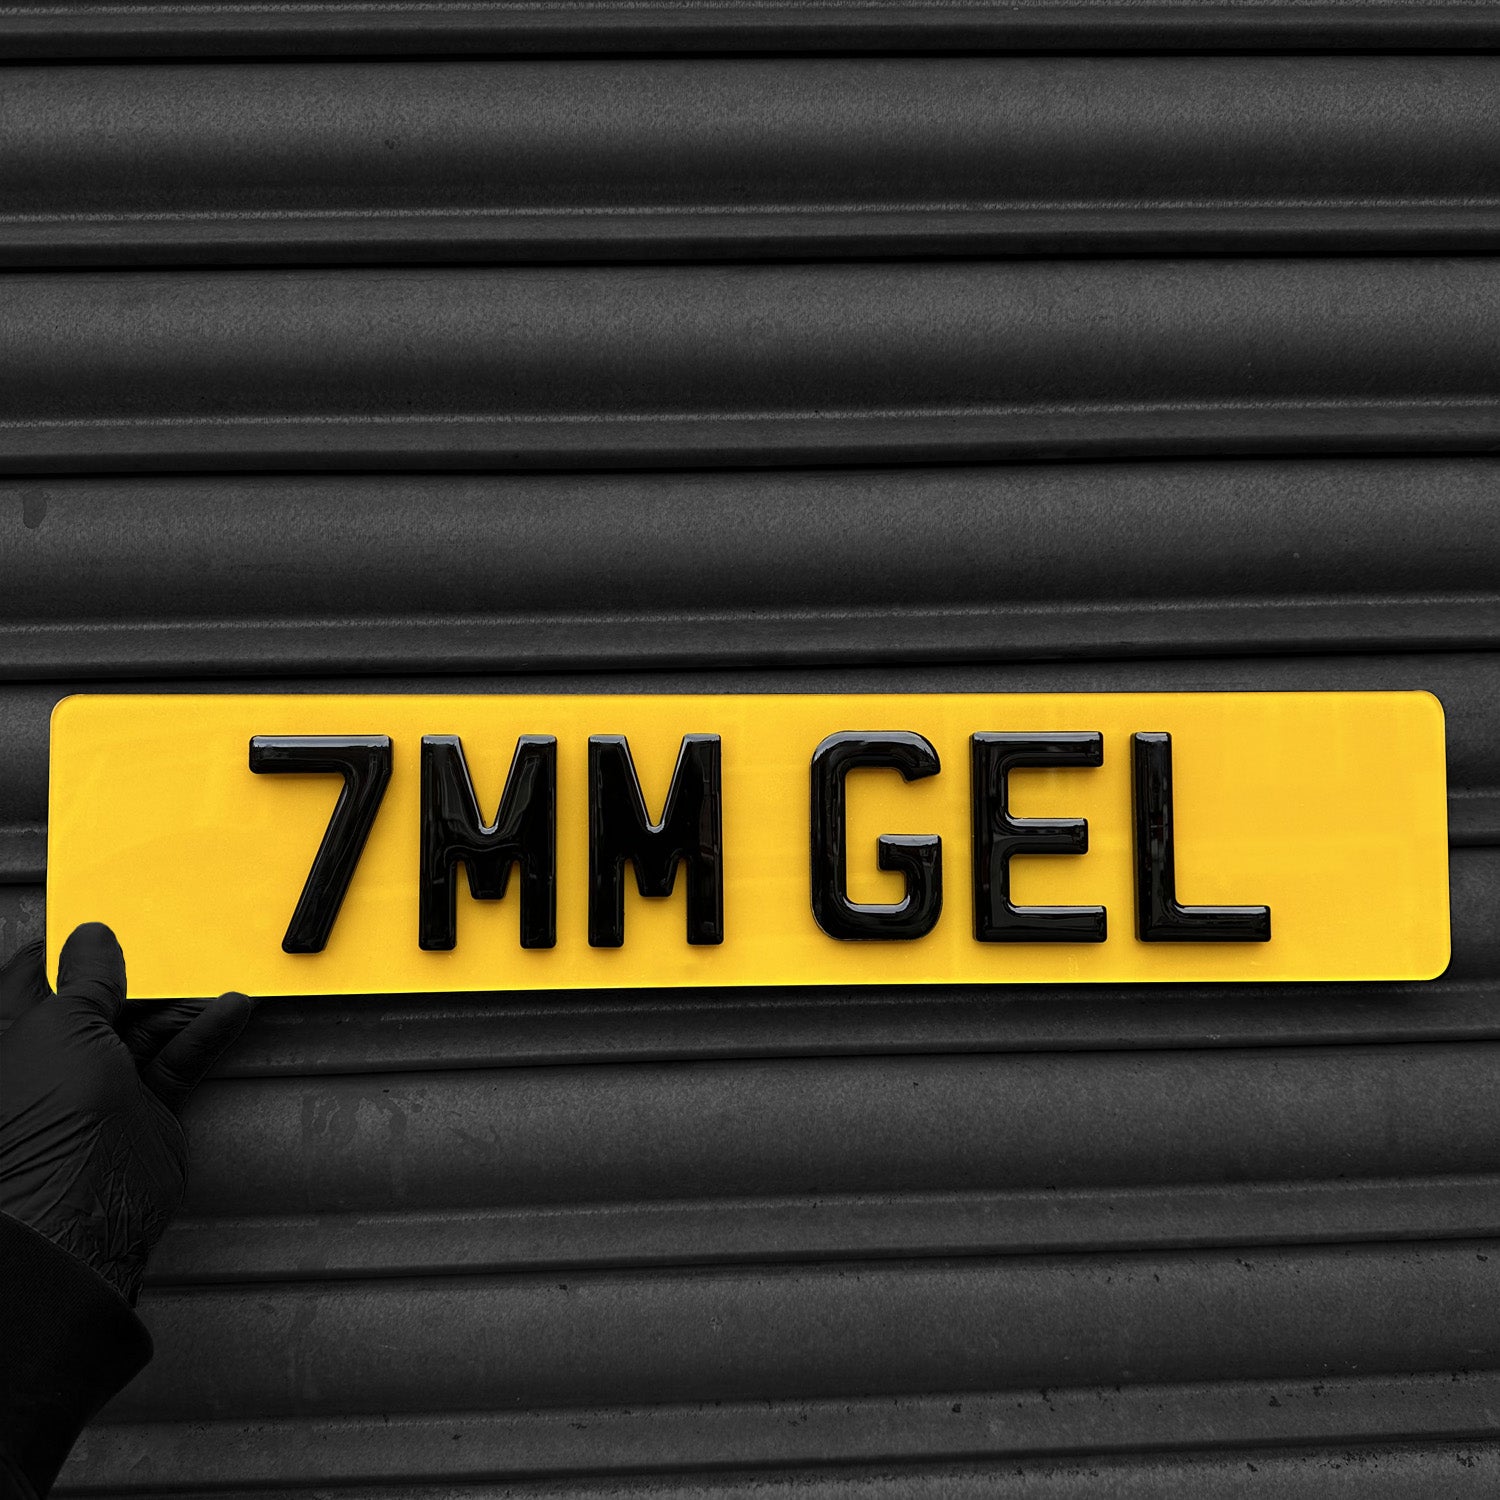 4D Gel 7MM Number Plate